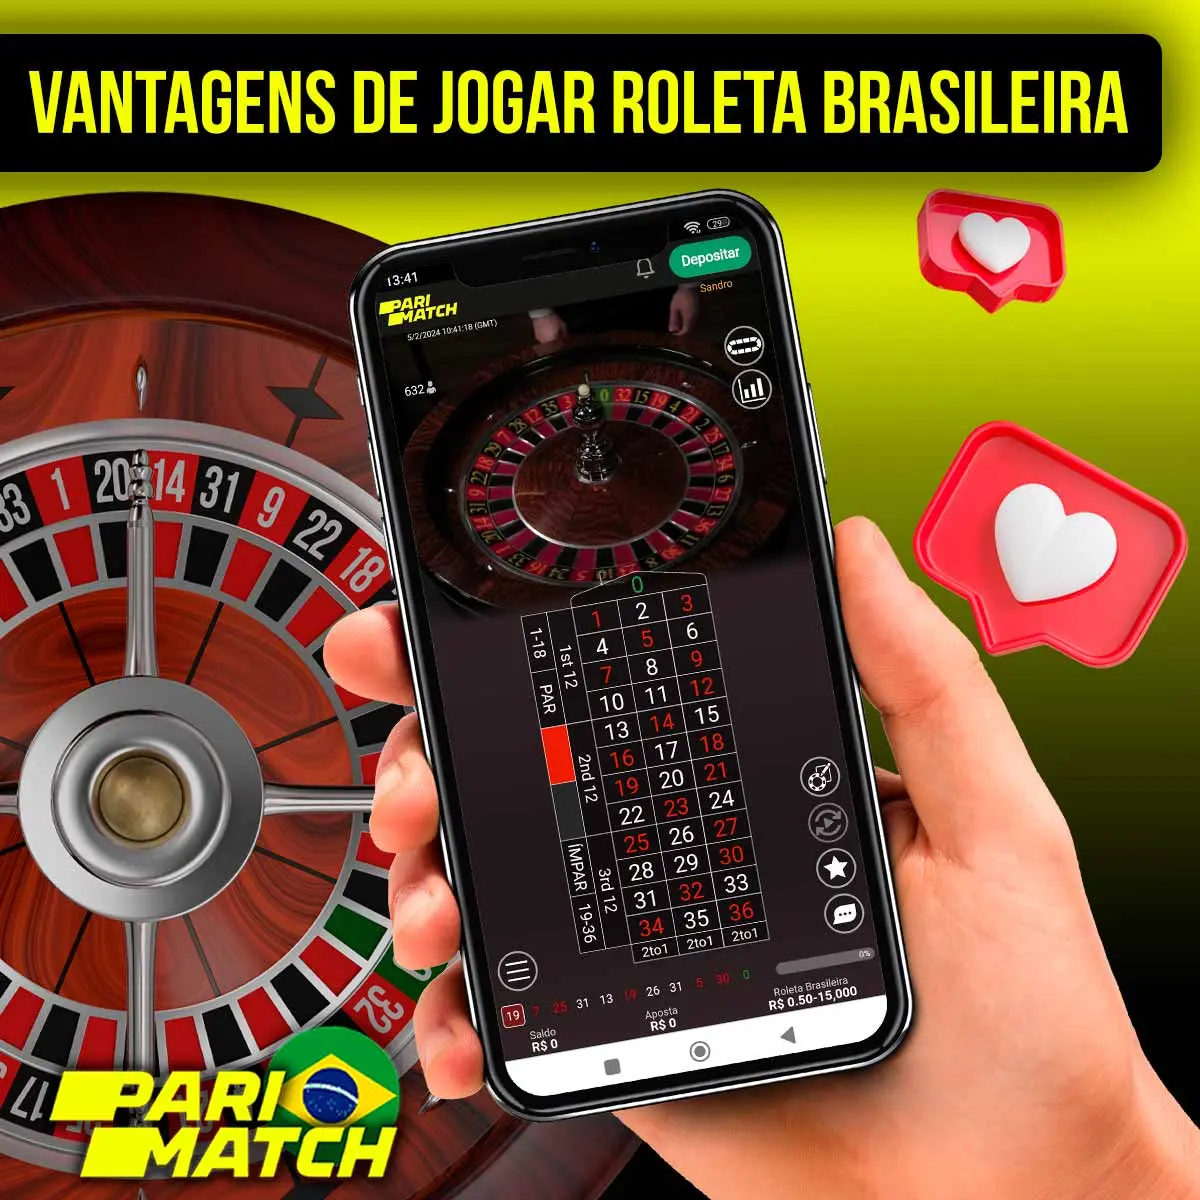 Vantagens de jogar na plataforma Parimatch Roleta Brasileira